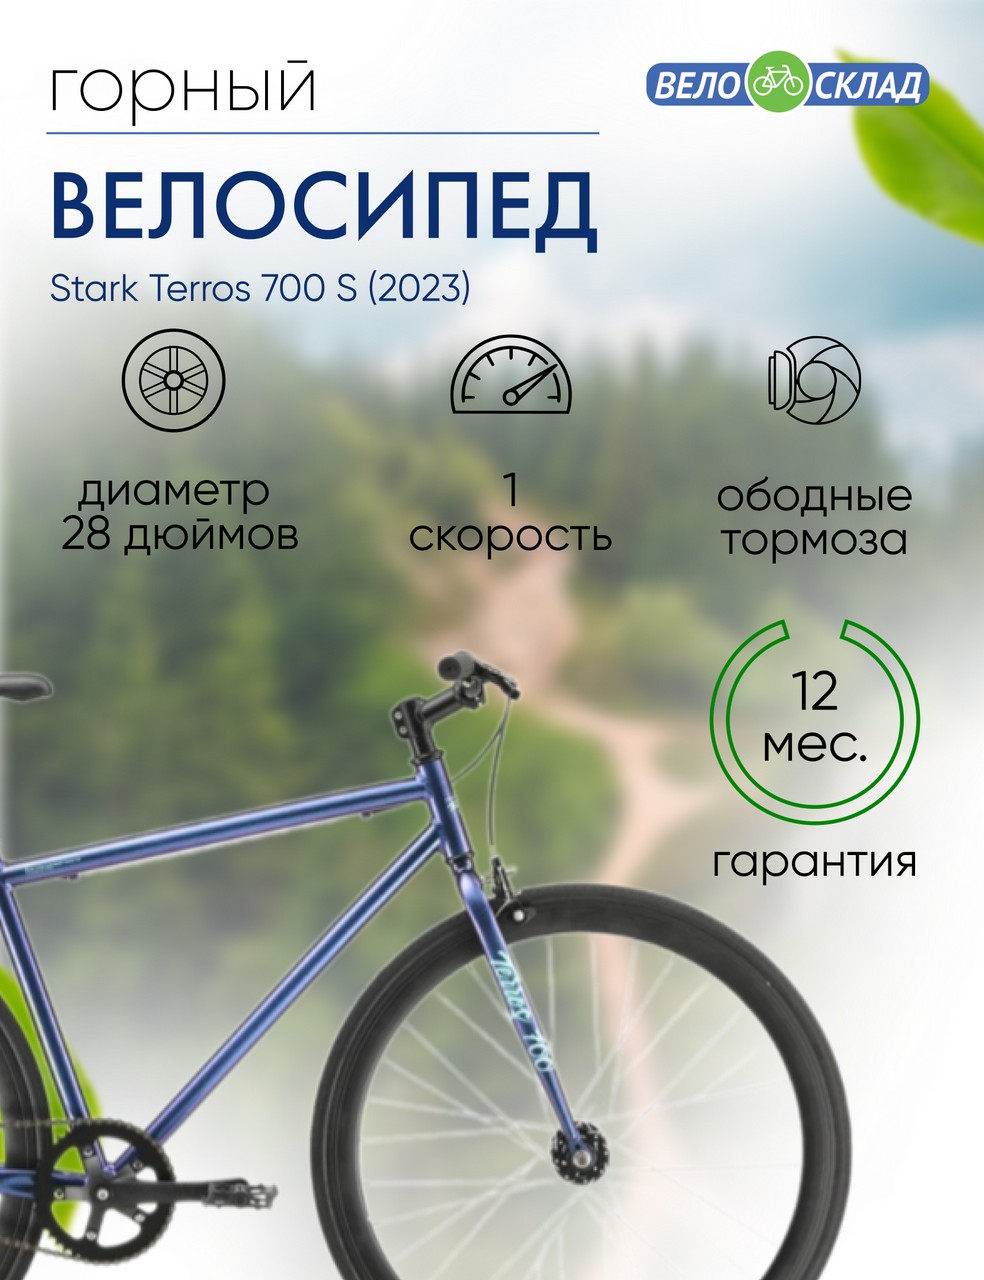 Дорожный велосипед Stark Terros 700 S, год 2023, цвет Фиолетовый-Зеленый, ростовка 18